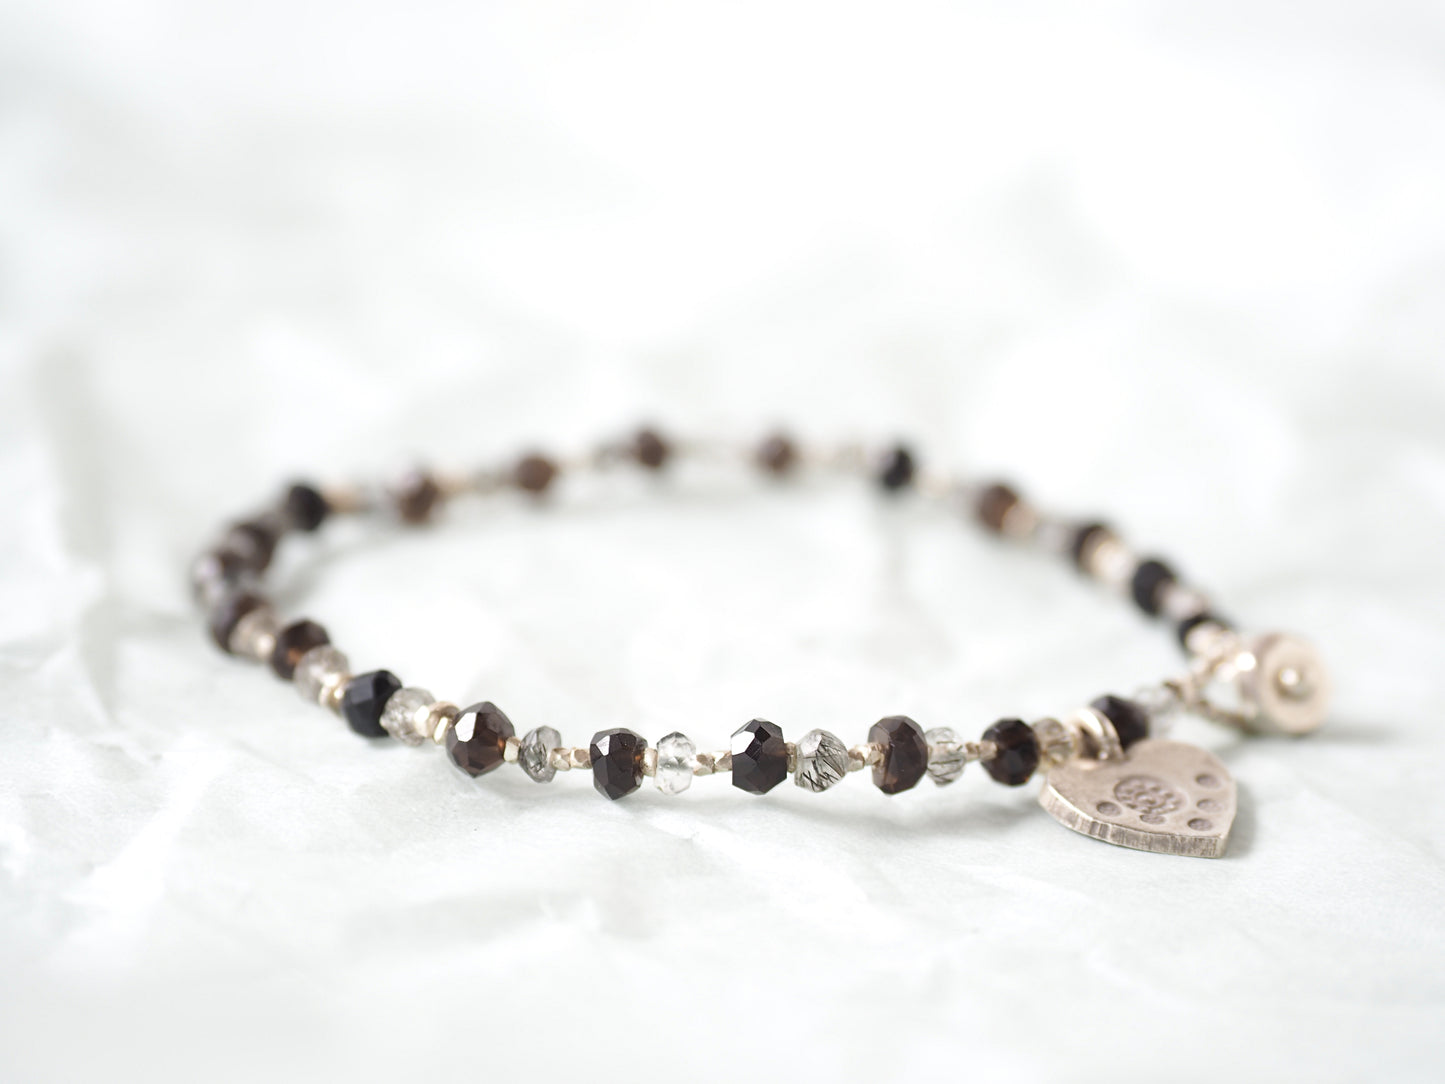 -Tourmaline quartz・Smoky quartz- silver bracelet